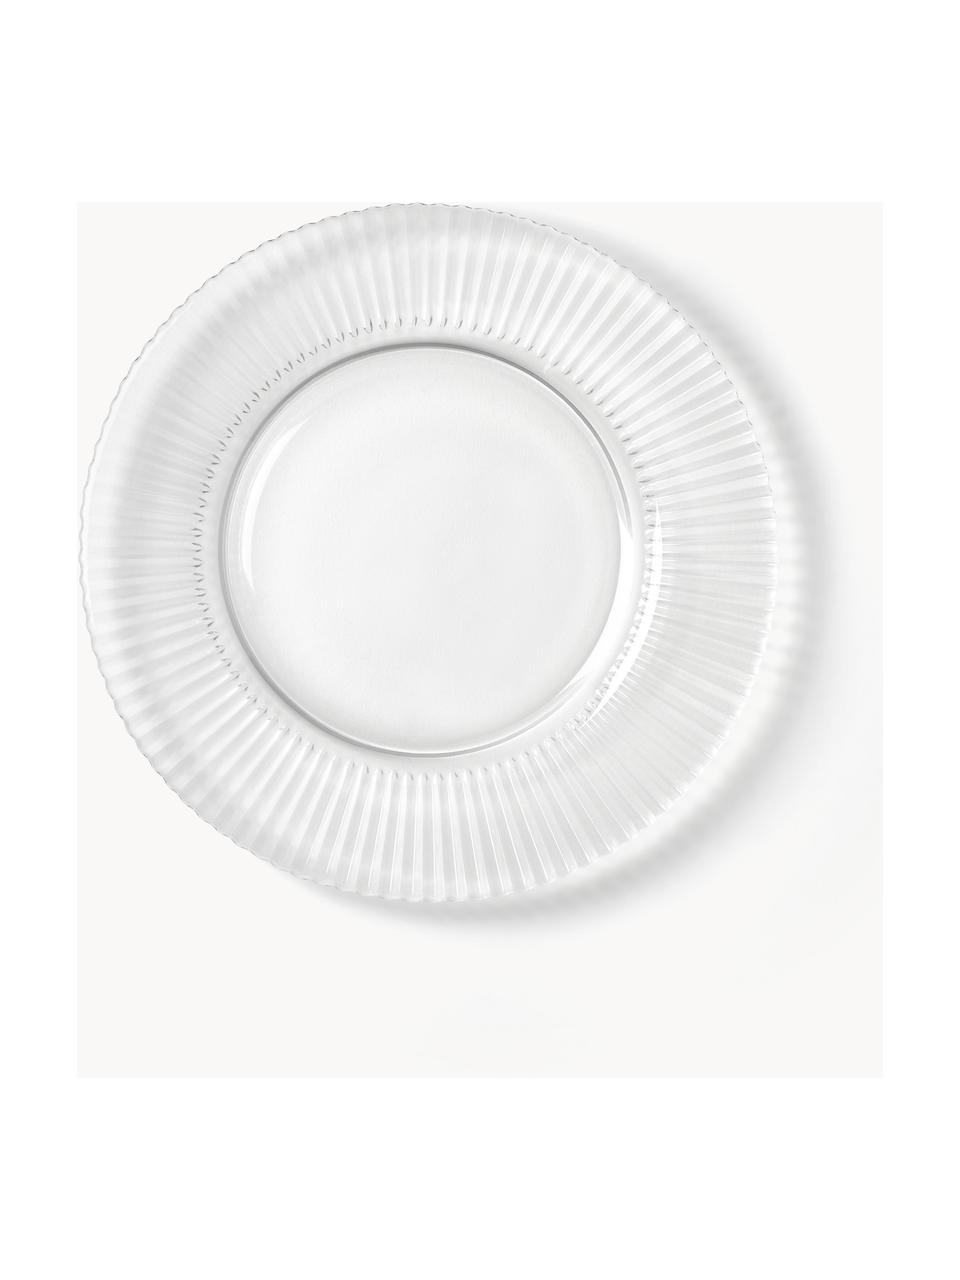 Piatti da colazione con struttura millerighe Effie 4 pz, Vetro, Trasparente, Ø 21 cm